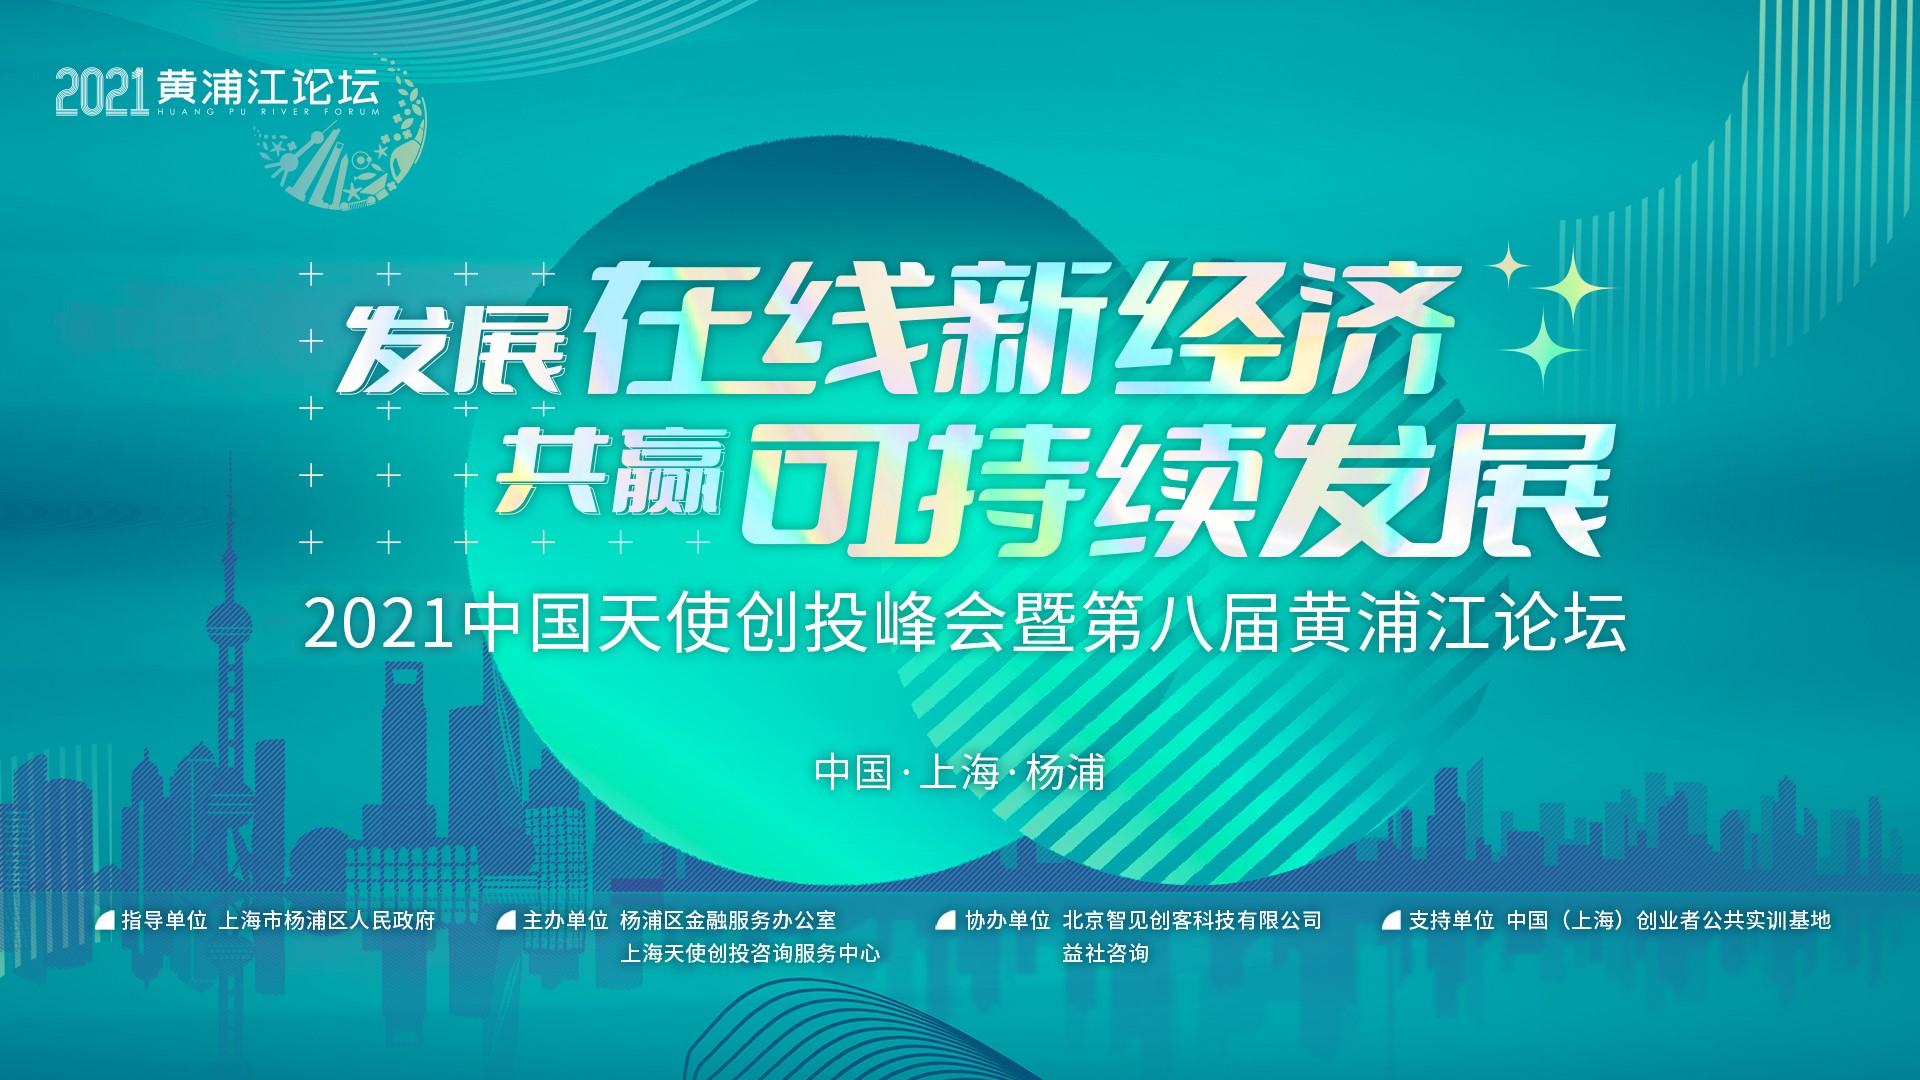 2021中国天使创投峰会暨第八届黄浦江论坛9月28-29日在上海杨浦举行